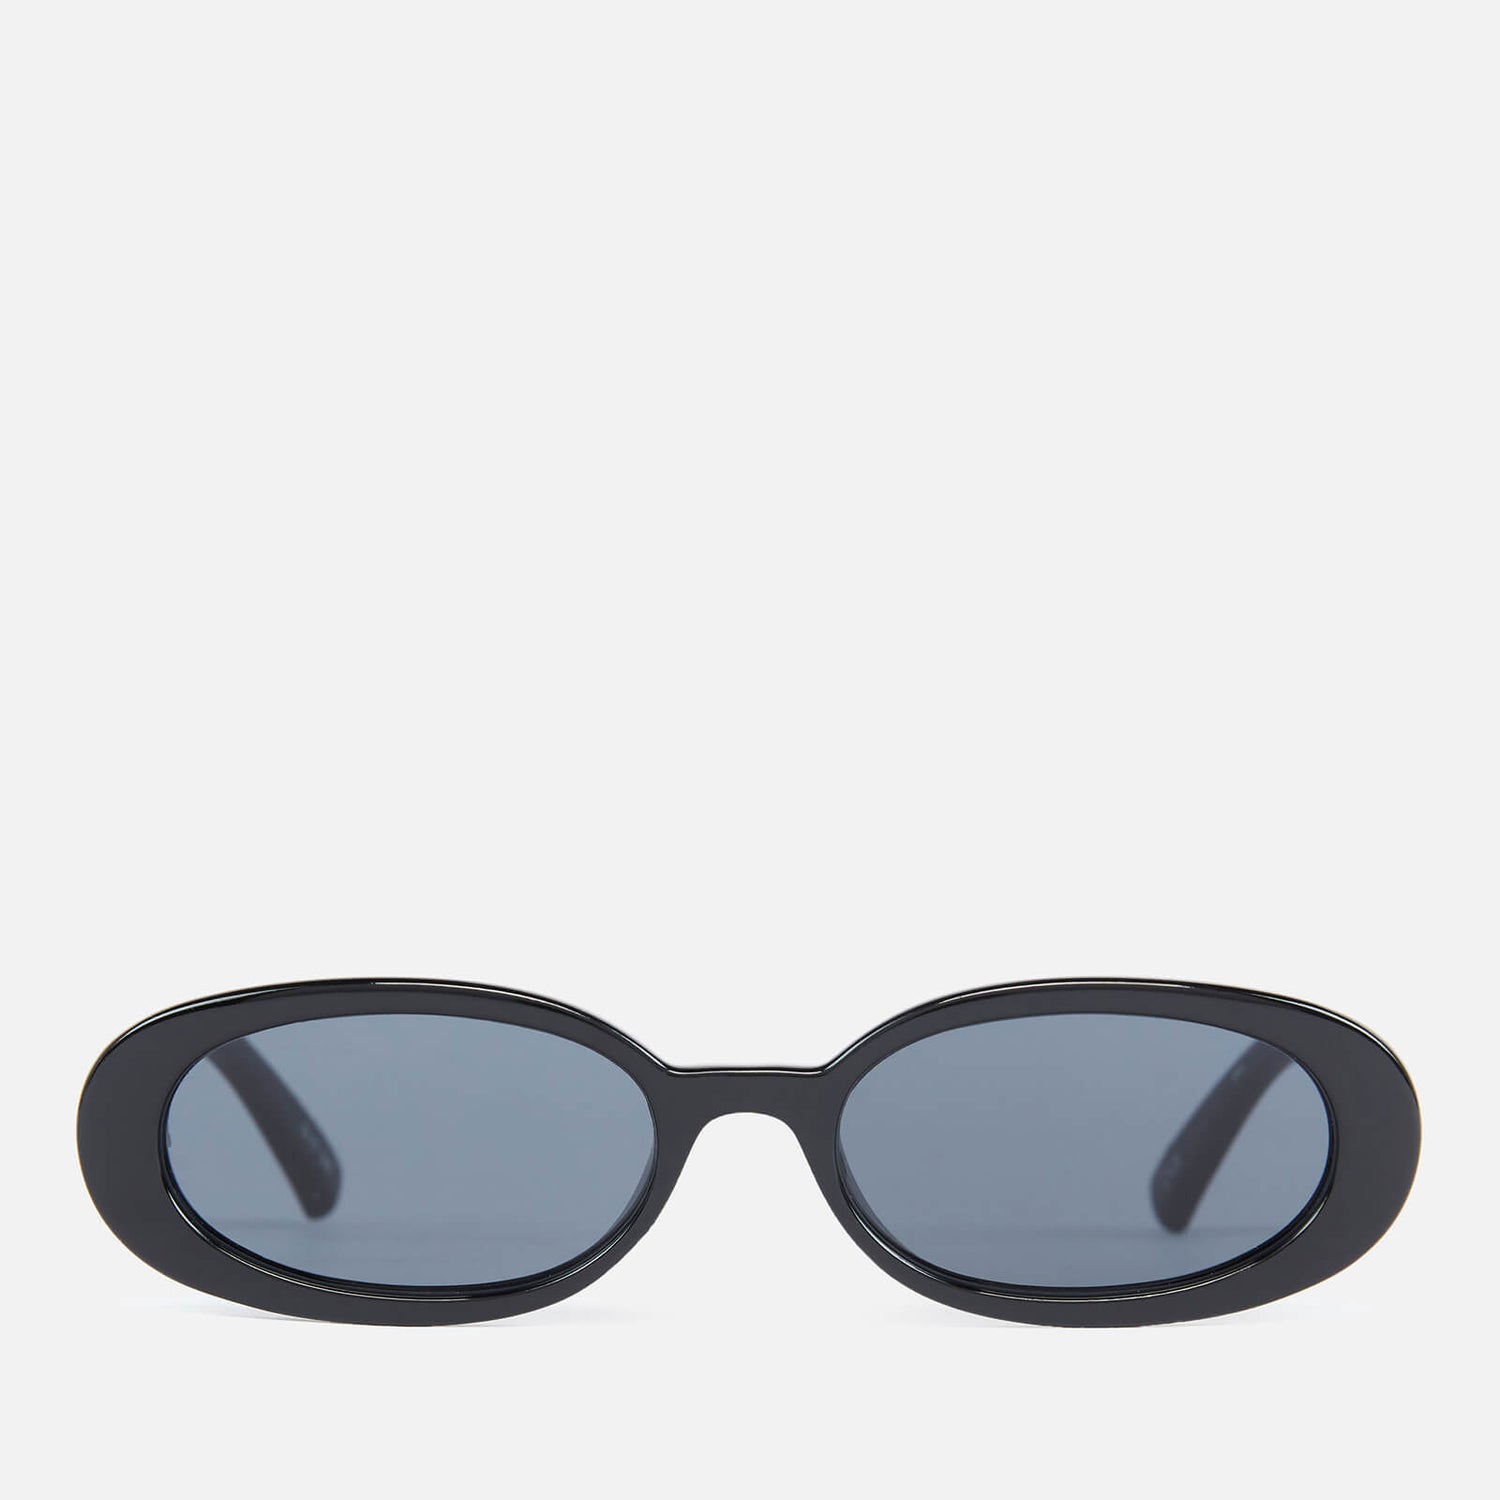 Le Specs x More Joy Women's Oval Sunglasses - Black